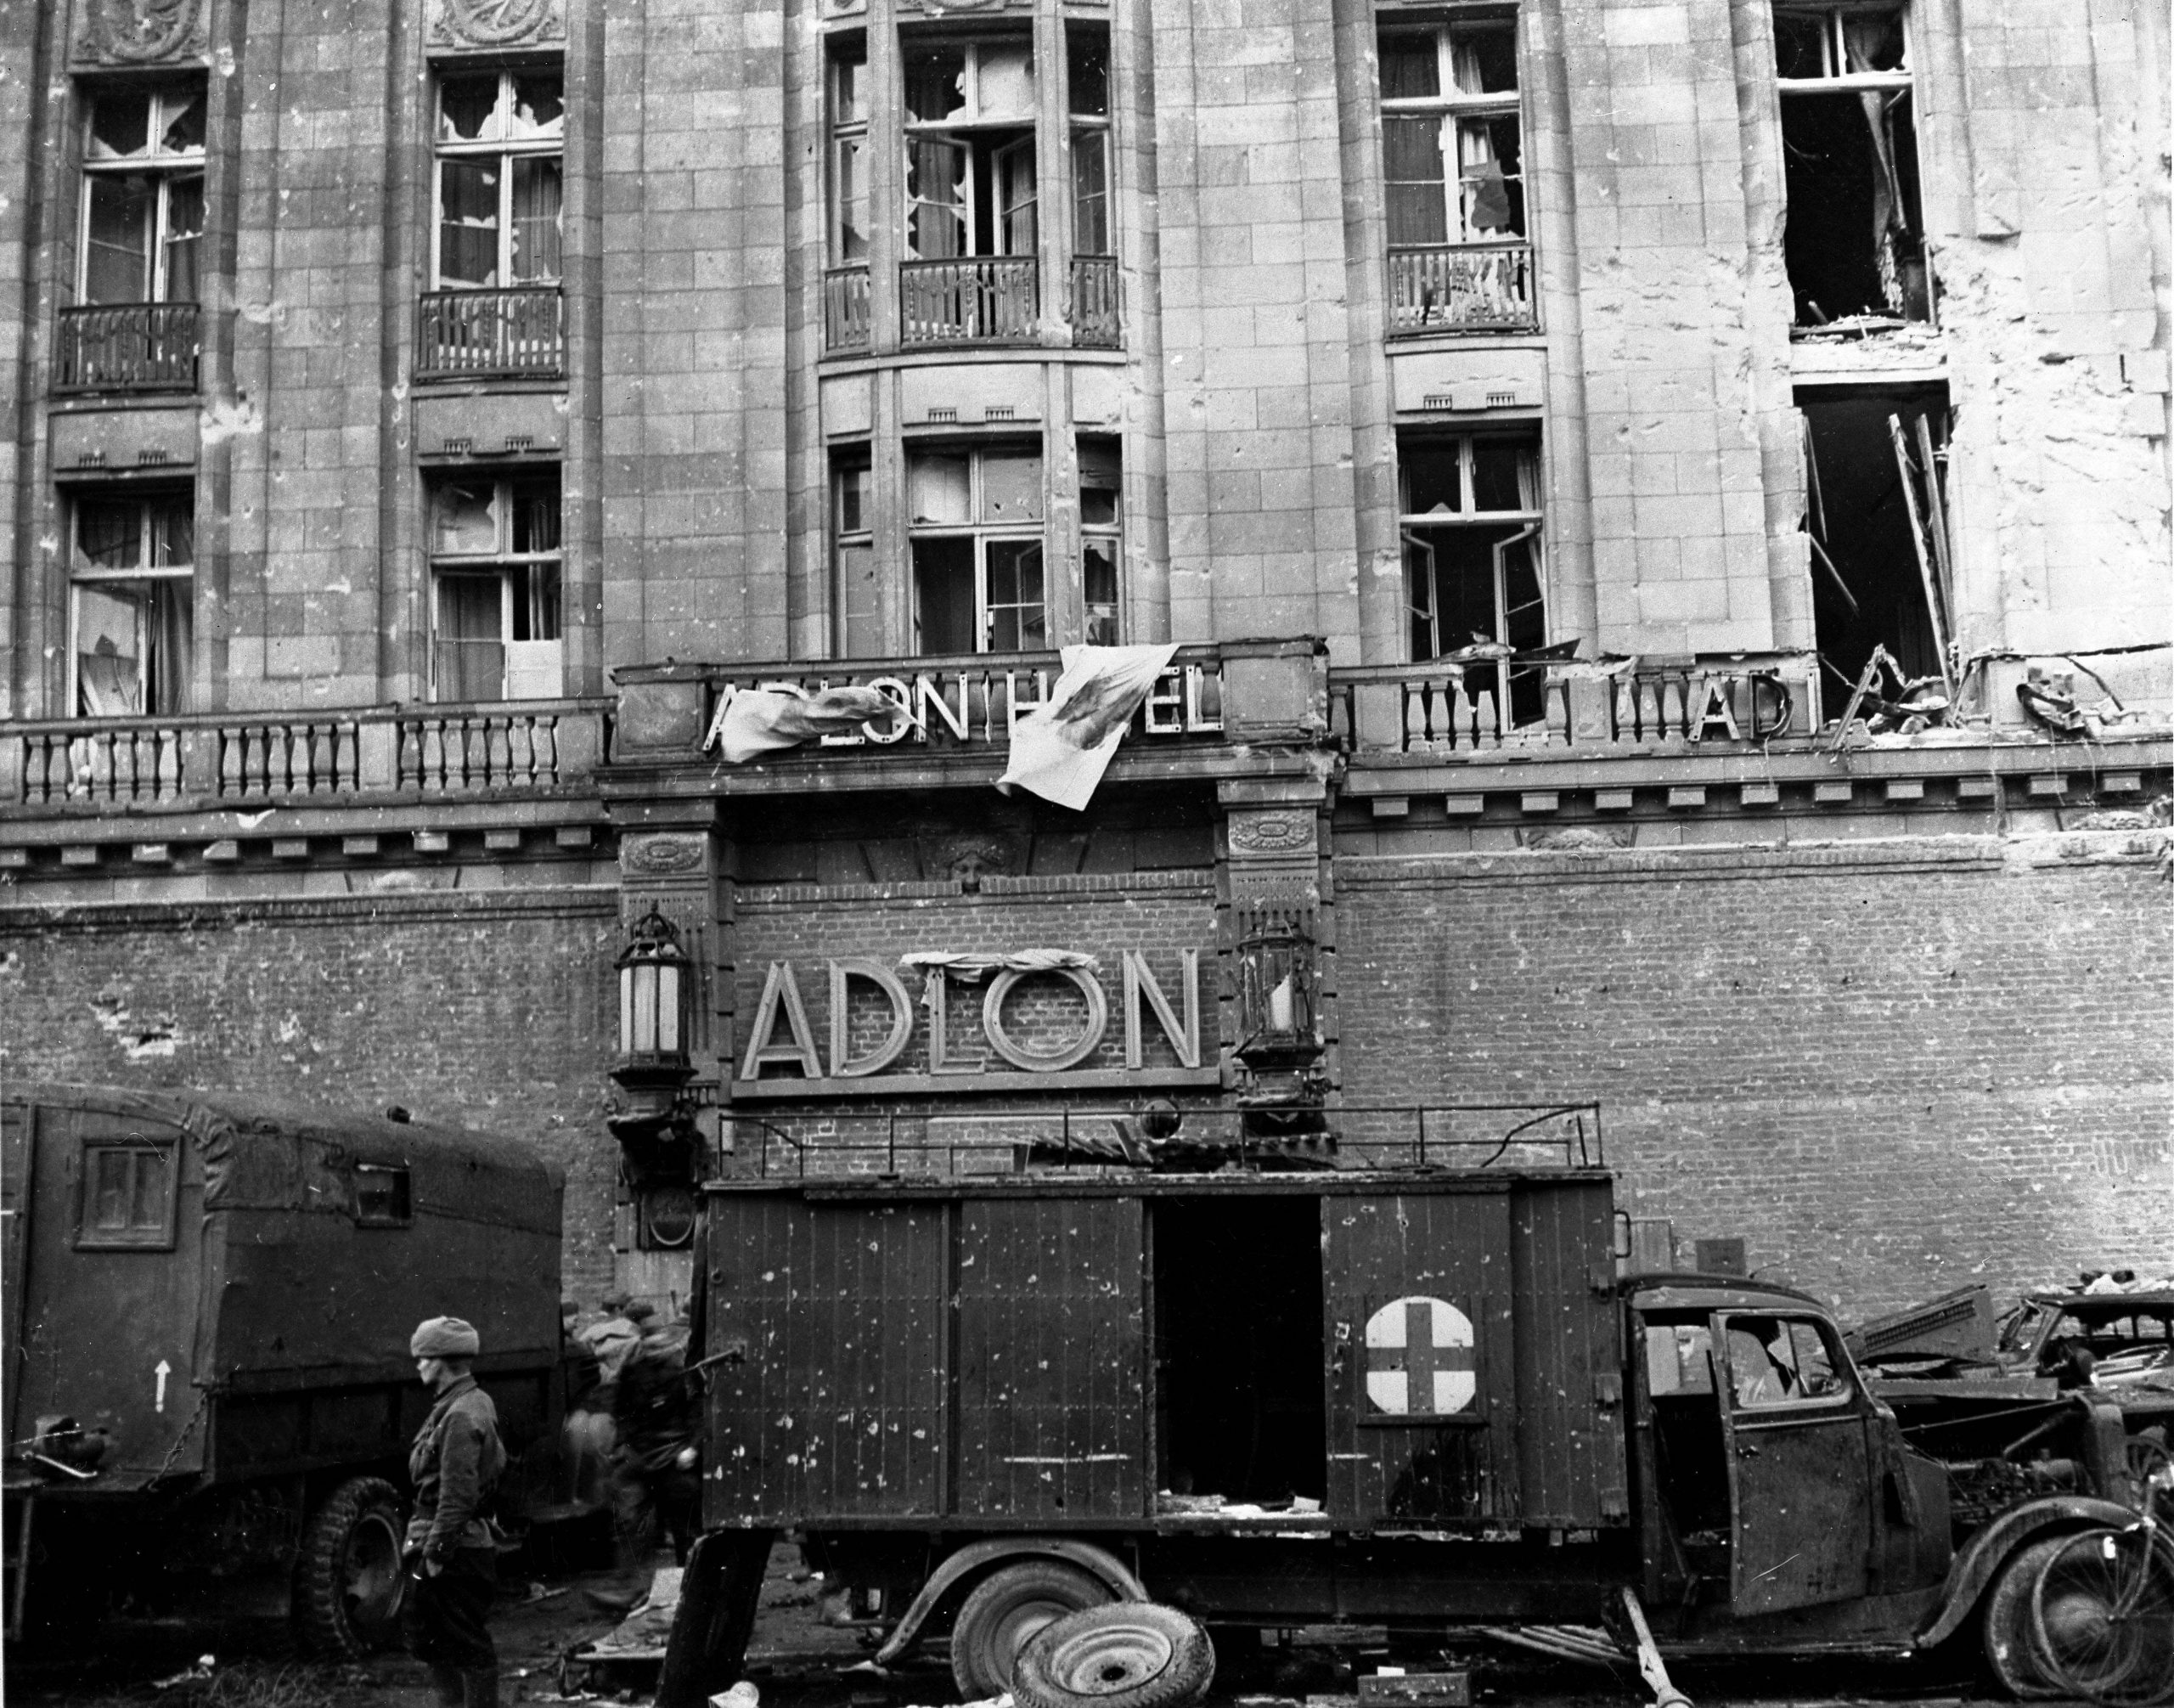 Fotos vom Kriegsende in Berlin: Ein mobiles Lazarett vor dem Hotel Adlon am 01. Mai 1945. 